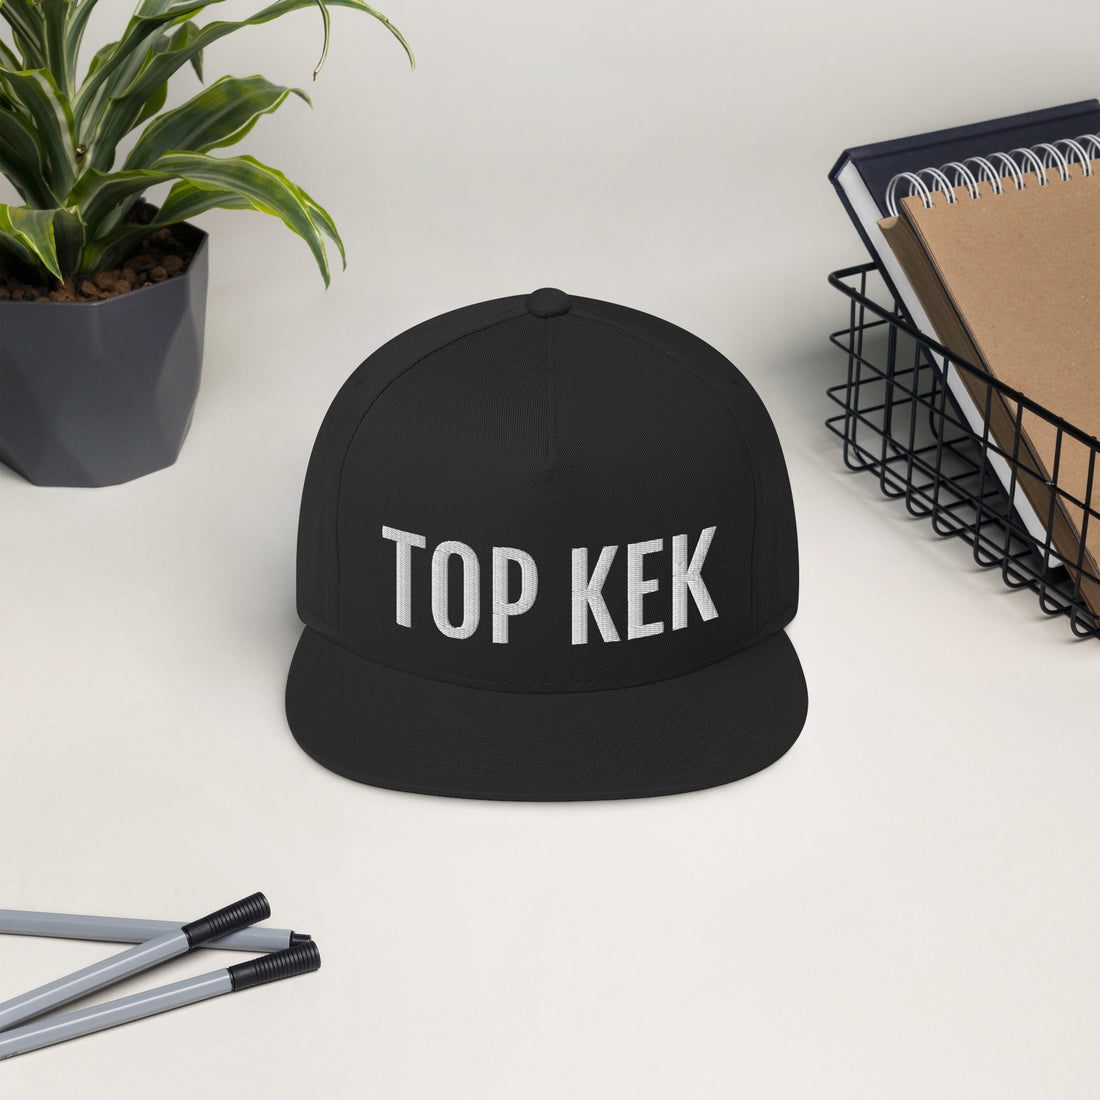 OG TOP KEK Hat - Black + Green Edition